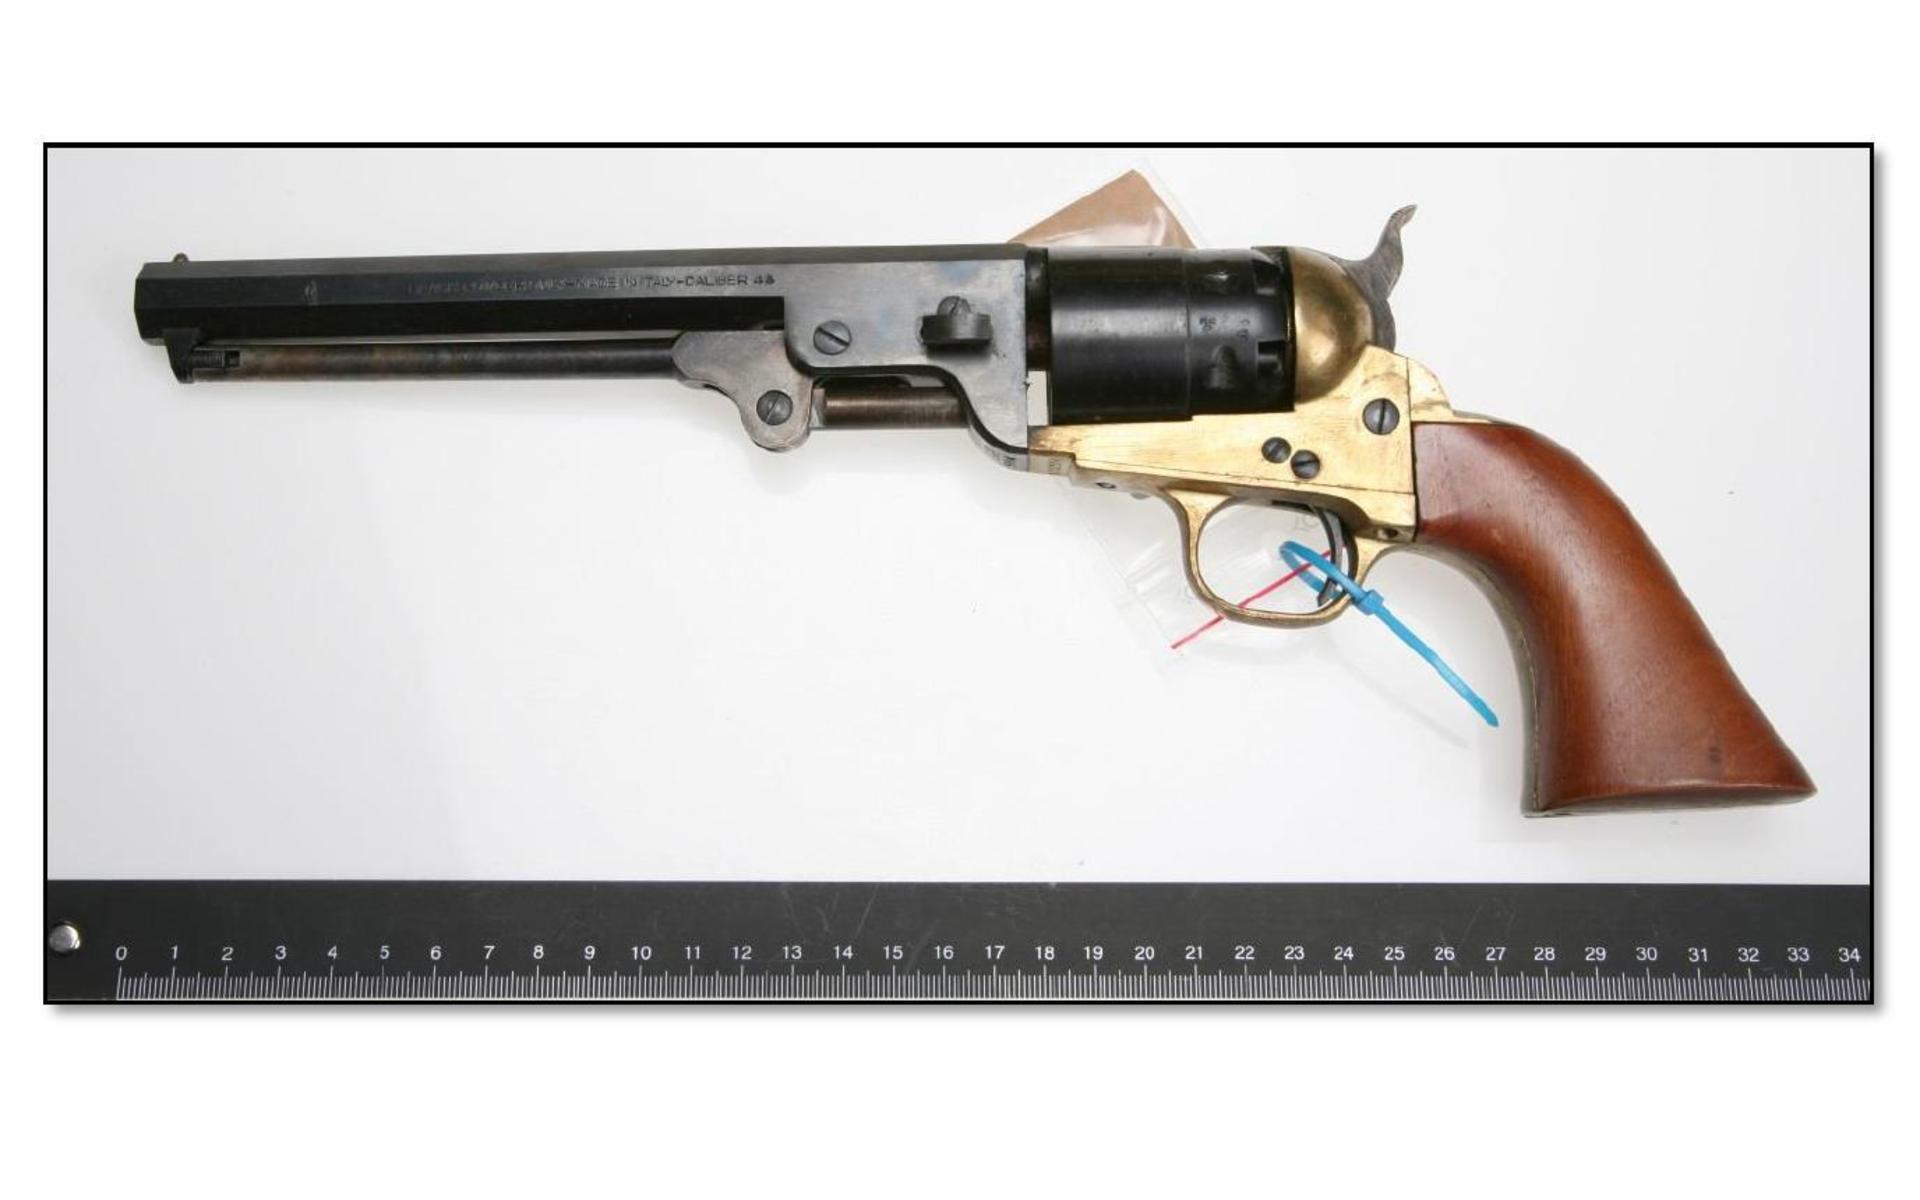 En revolver av singel aktion-typ i kaliber .44. Licens saknades. Bild: Polisen